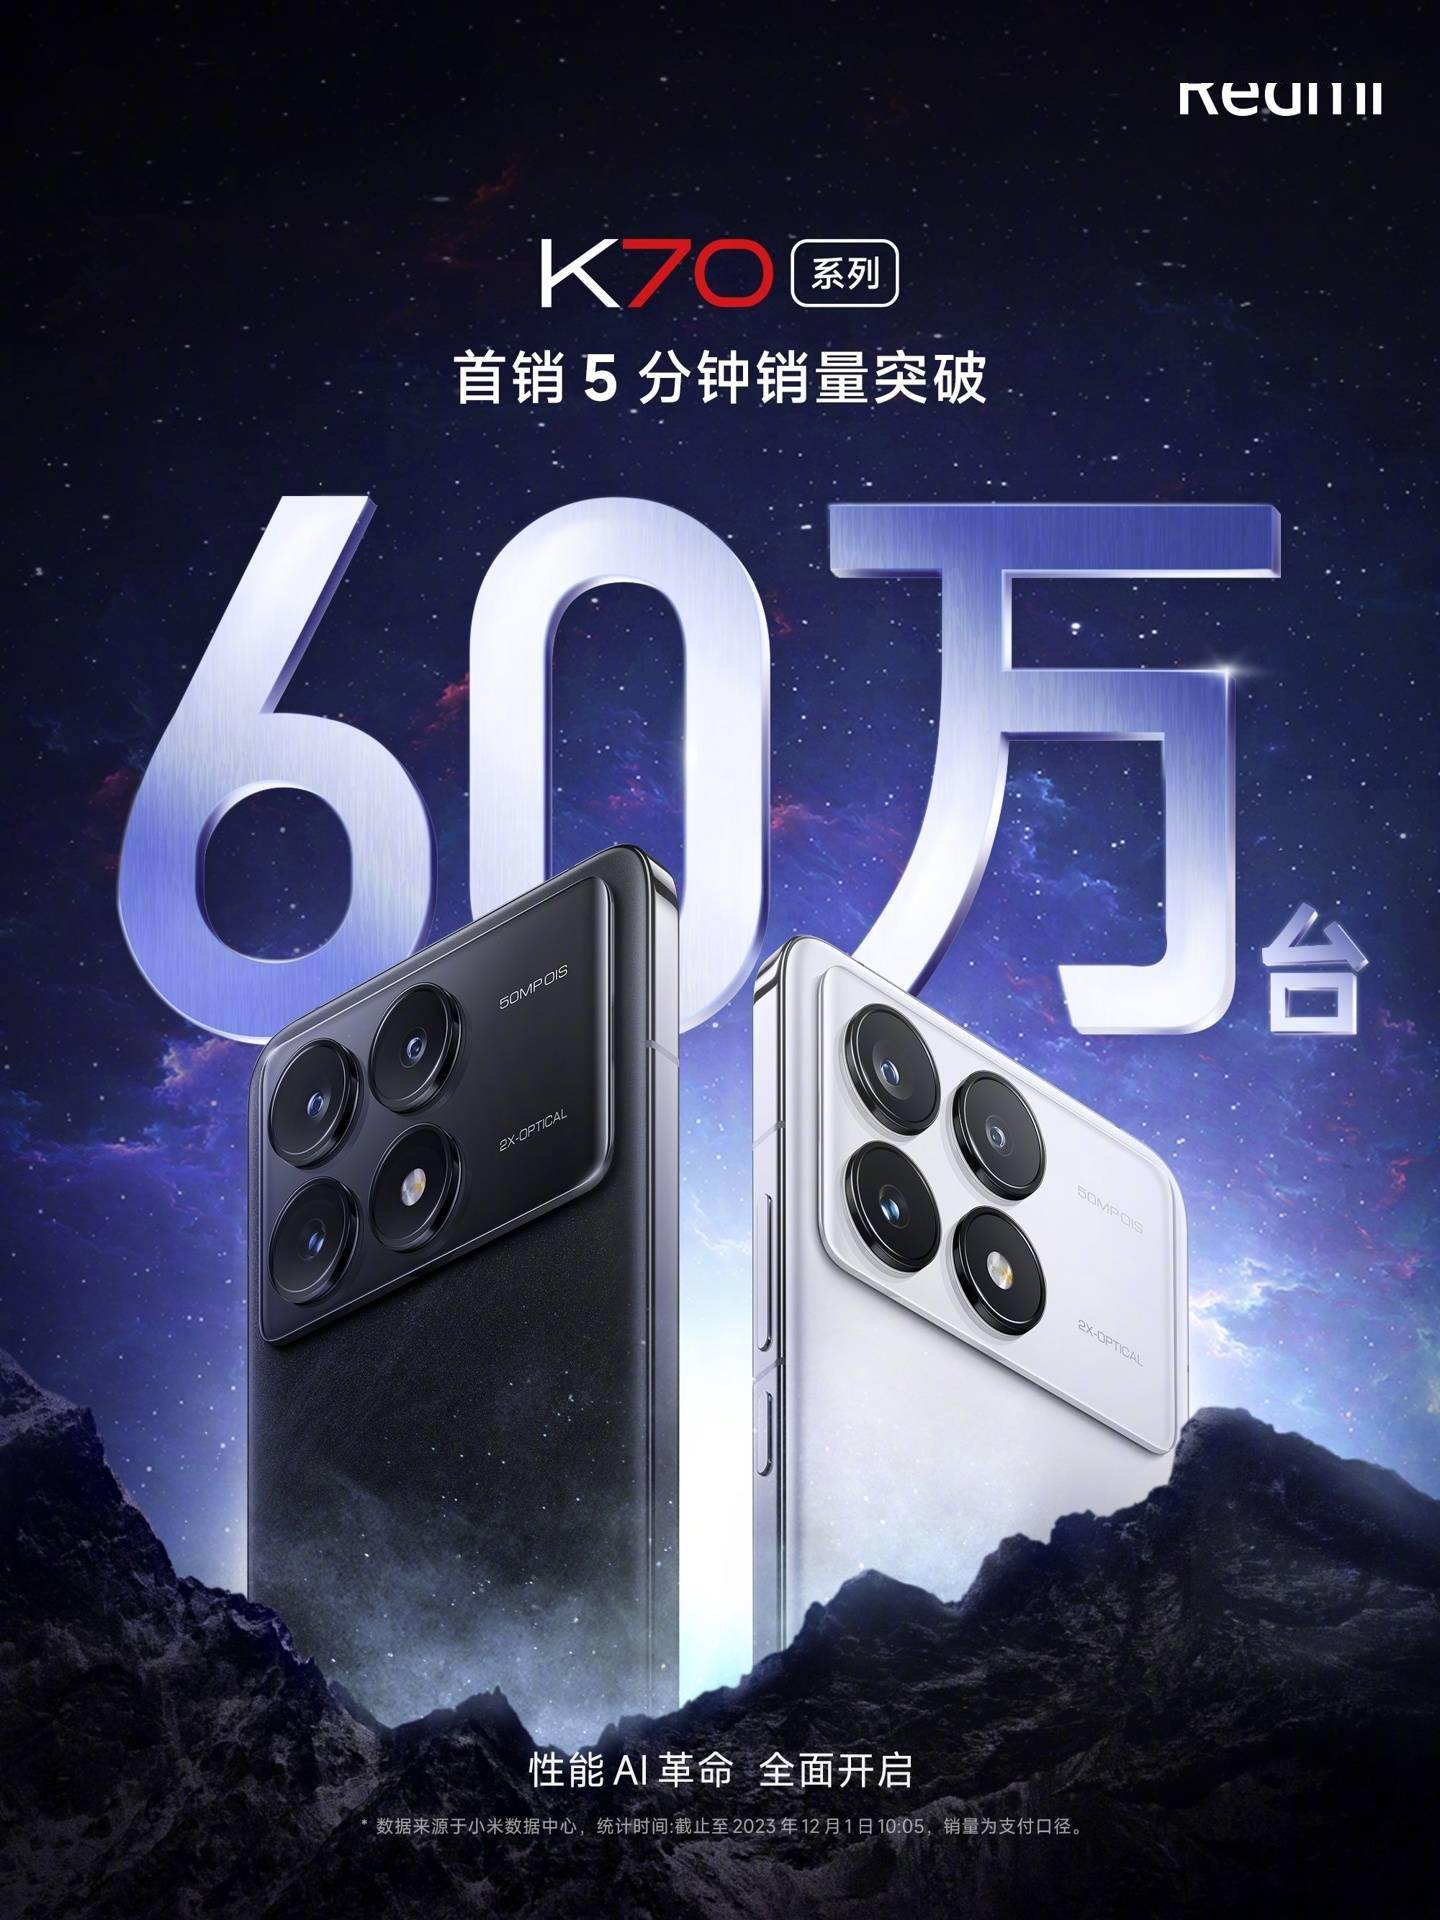  小米 Redmi K70 系列手机首销 5 分钟突破 60 万台，热销势头强劲